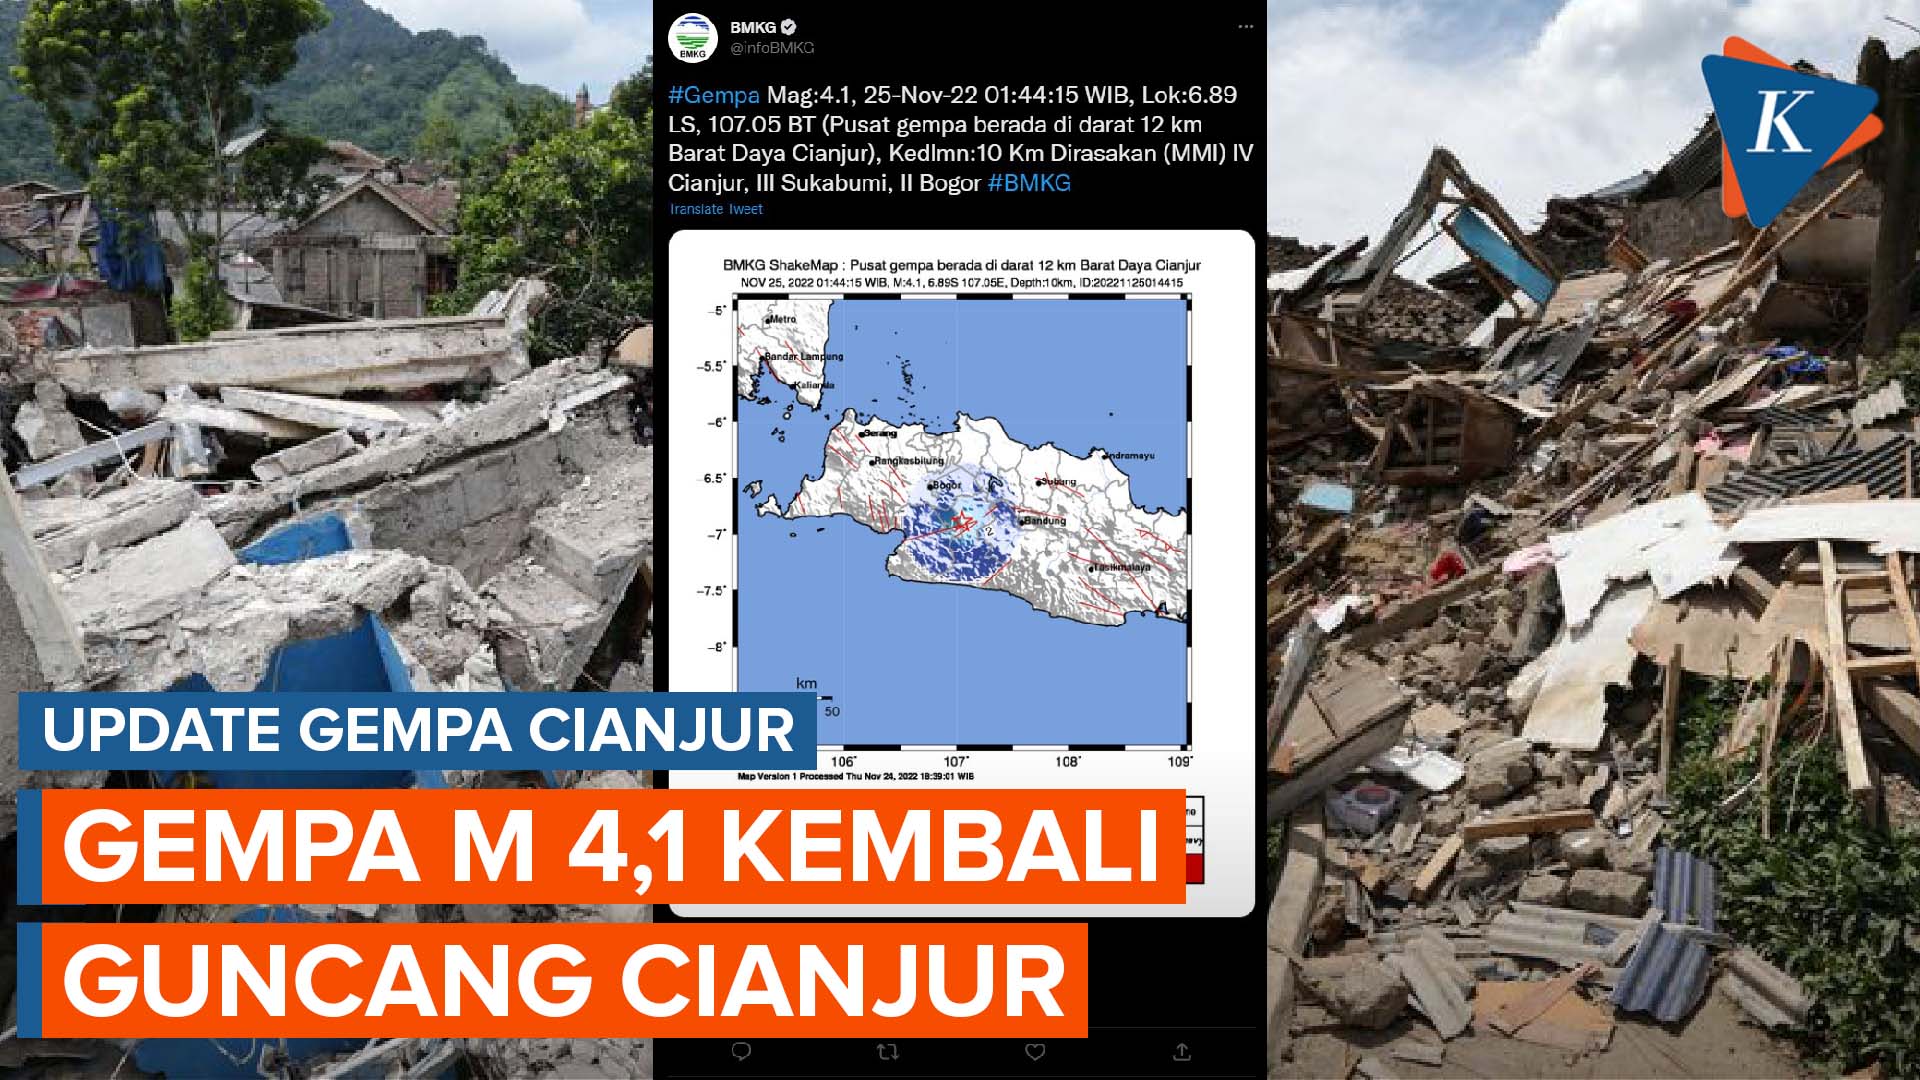 Gempa Berkekuatan M 4,1 Kembali Guncang Cianjur dan Sekitarnya pada Jumat Dini Hari